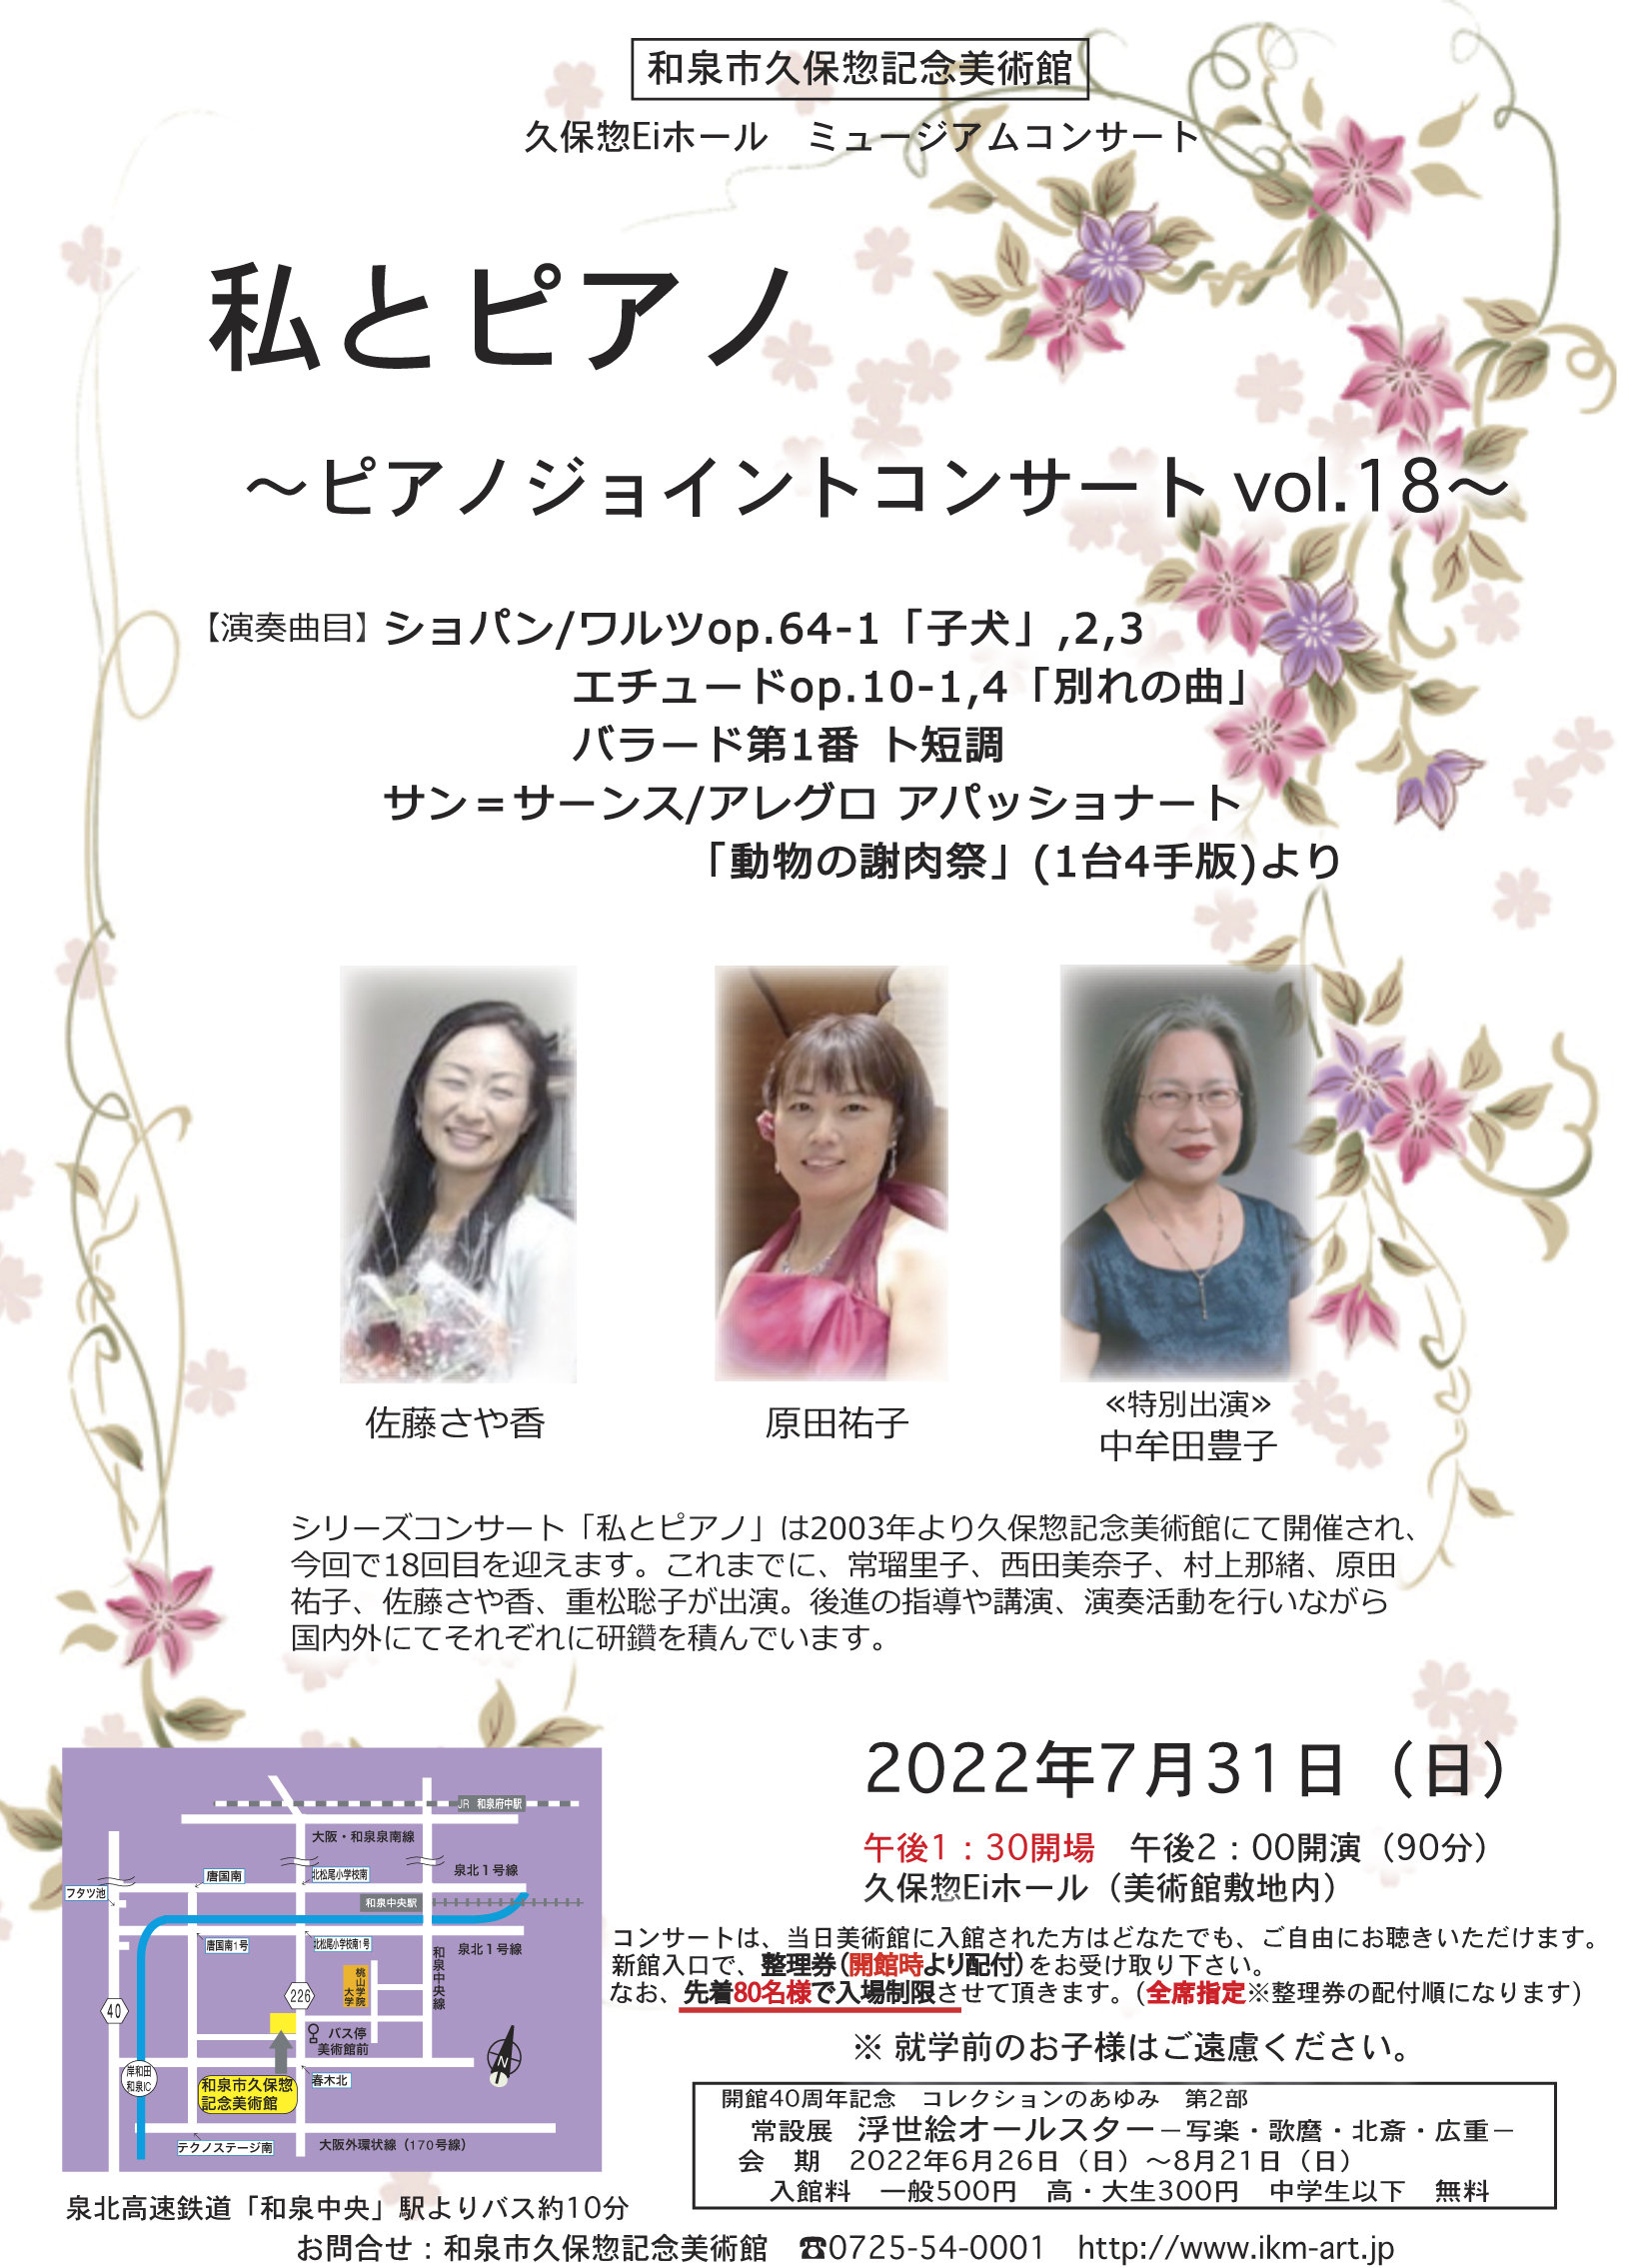 私とピアノ〜ピアノジョイントコンサート vol.18〜